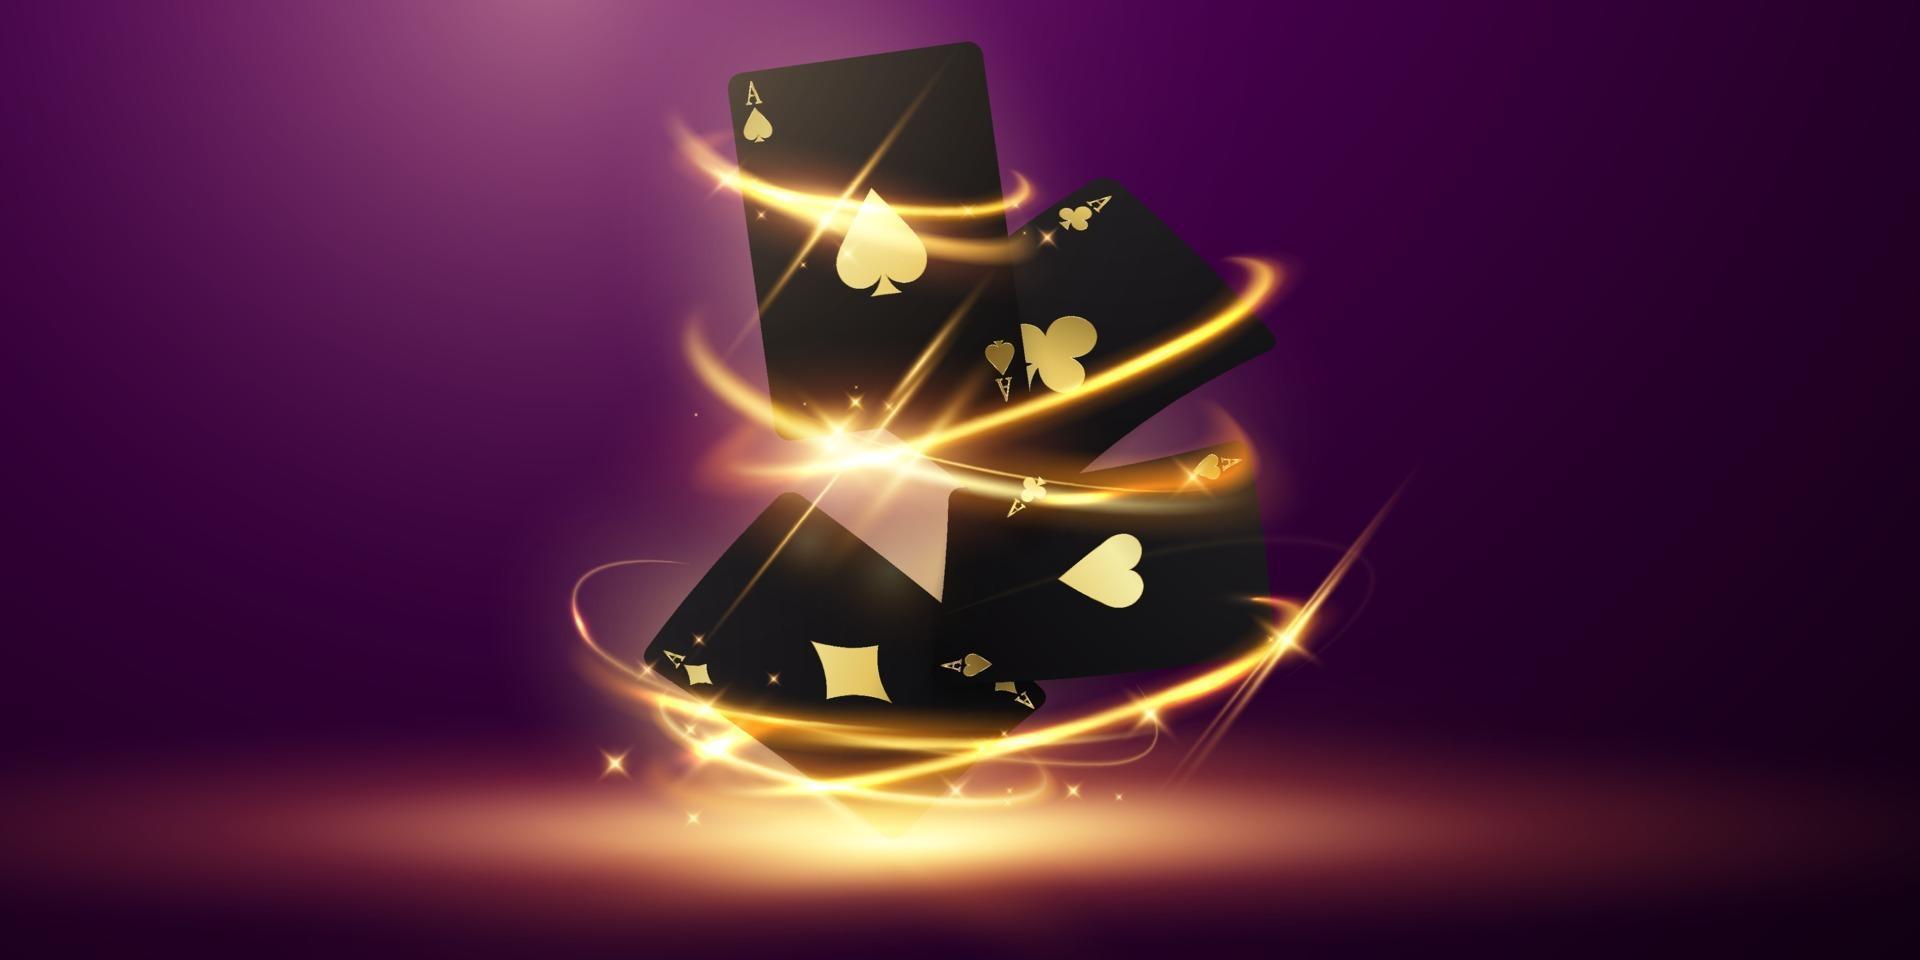 giocando a carte. vincere fiches da casinò a mano di poker con gettoni realistici per il gioco d'azzardo, contanti per la roulette o il poker, vettore